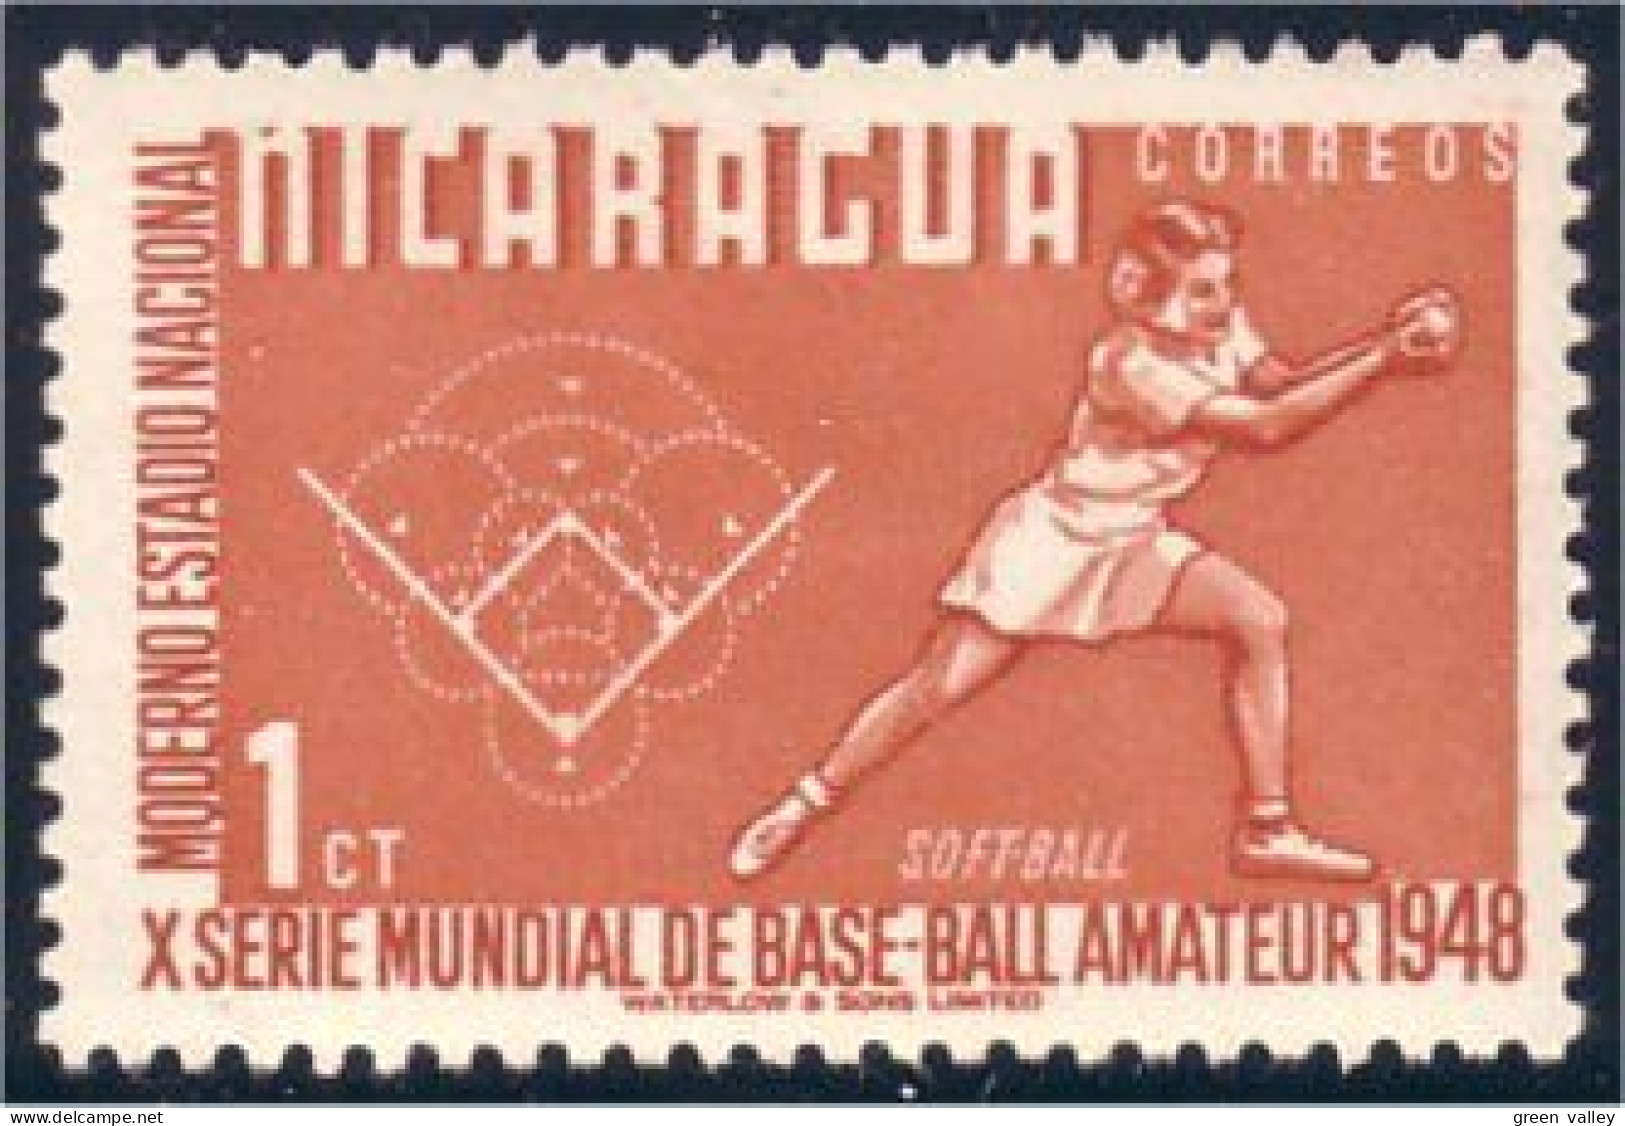 684 Nicaragua Baseball Base Ball MLH * Neuf (NIC-173) - Base-Ball